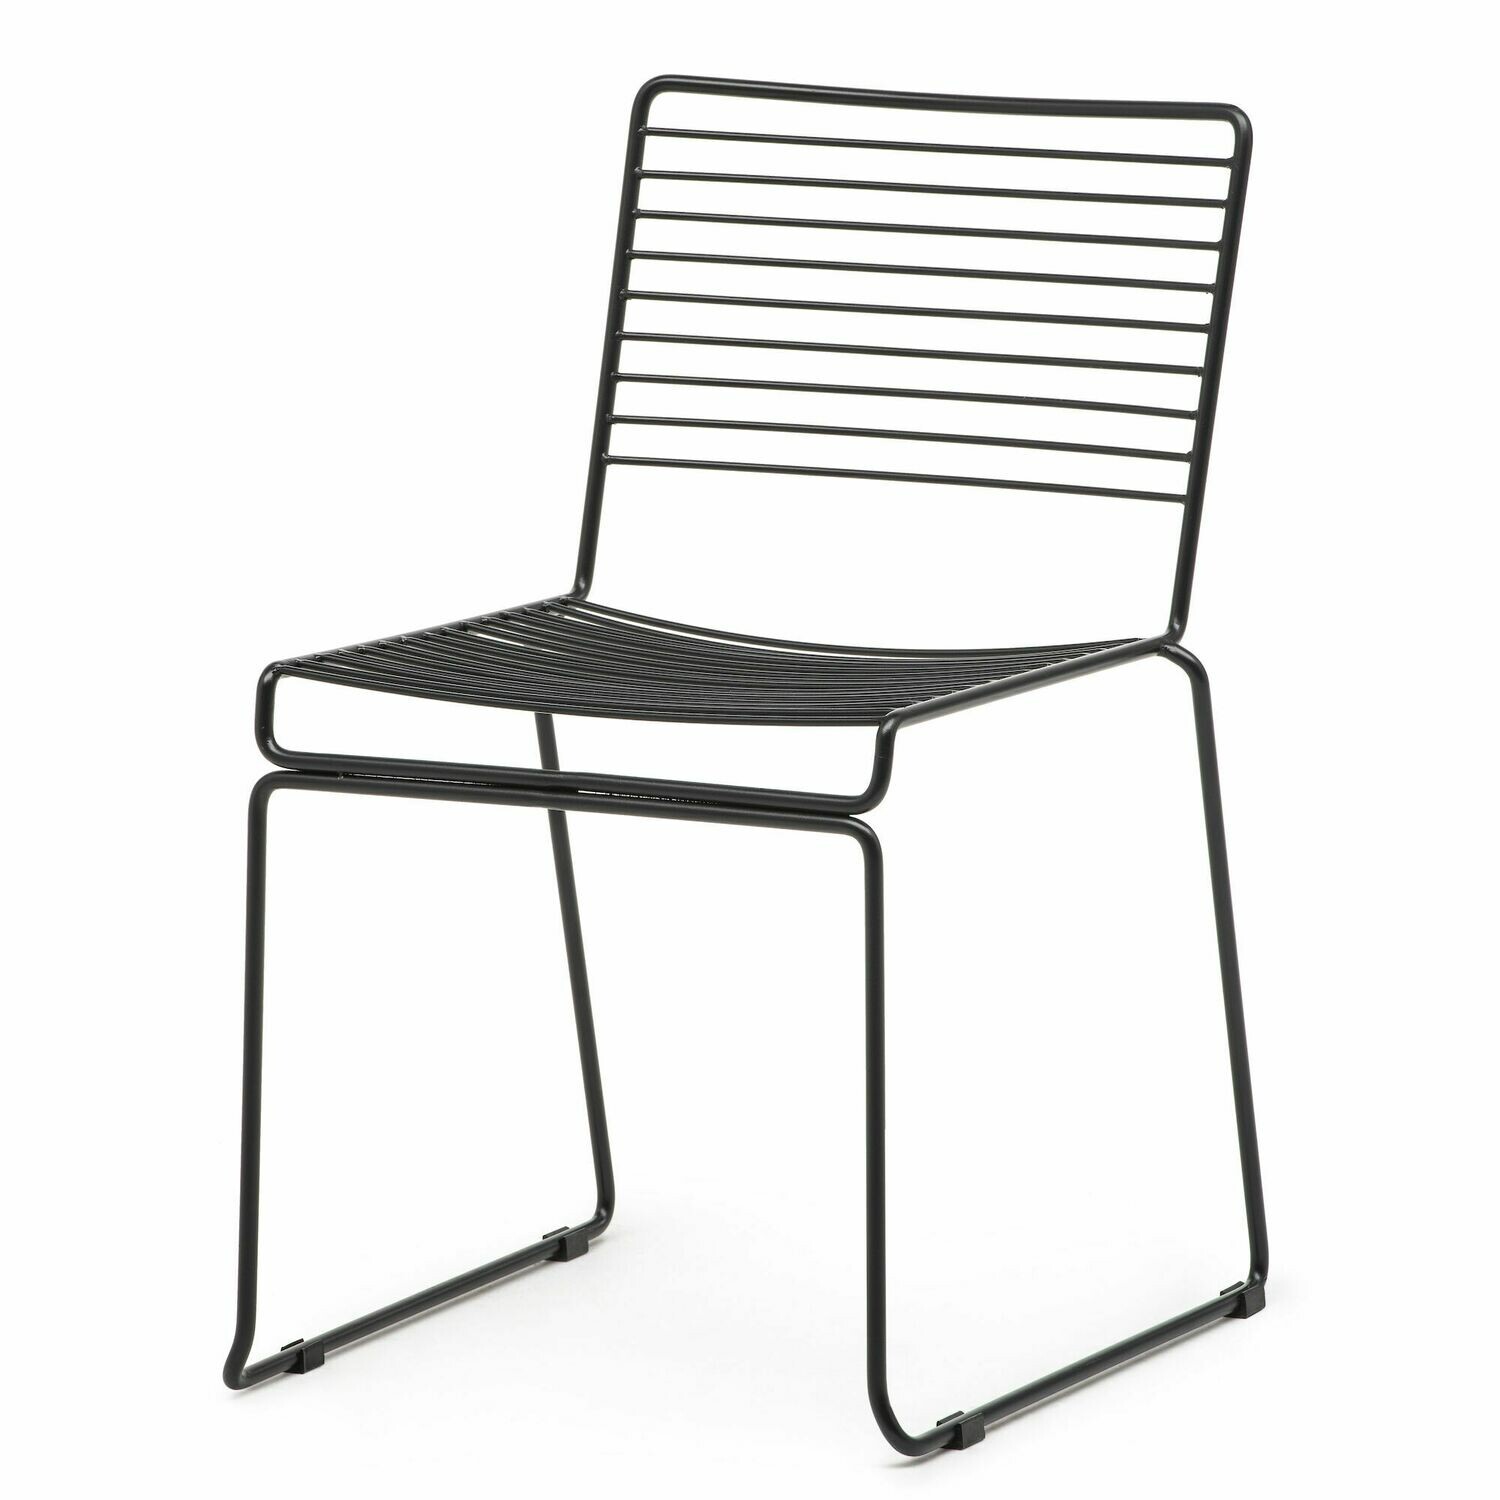 Stapelstoel - Wire Chair - zwart staal